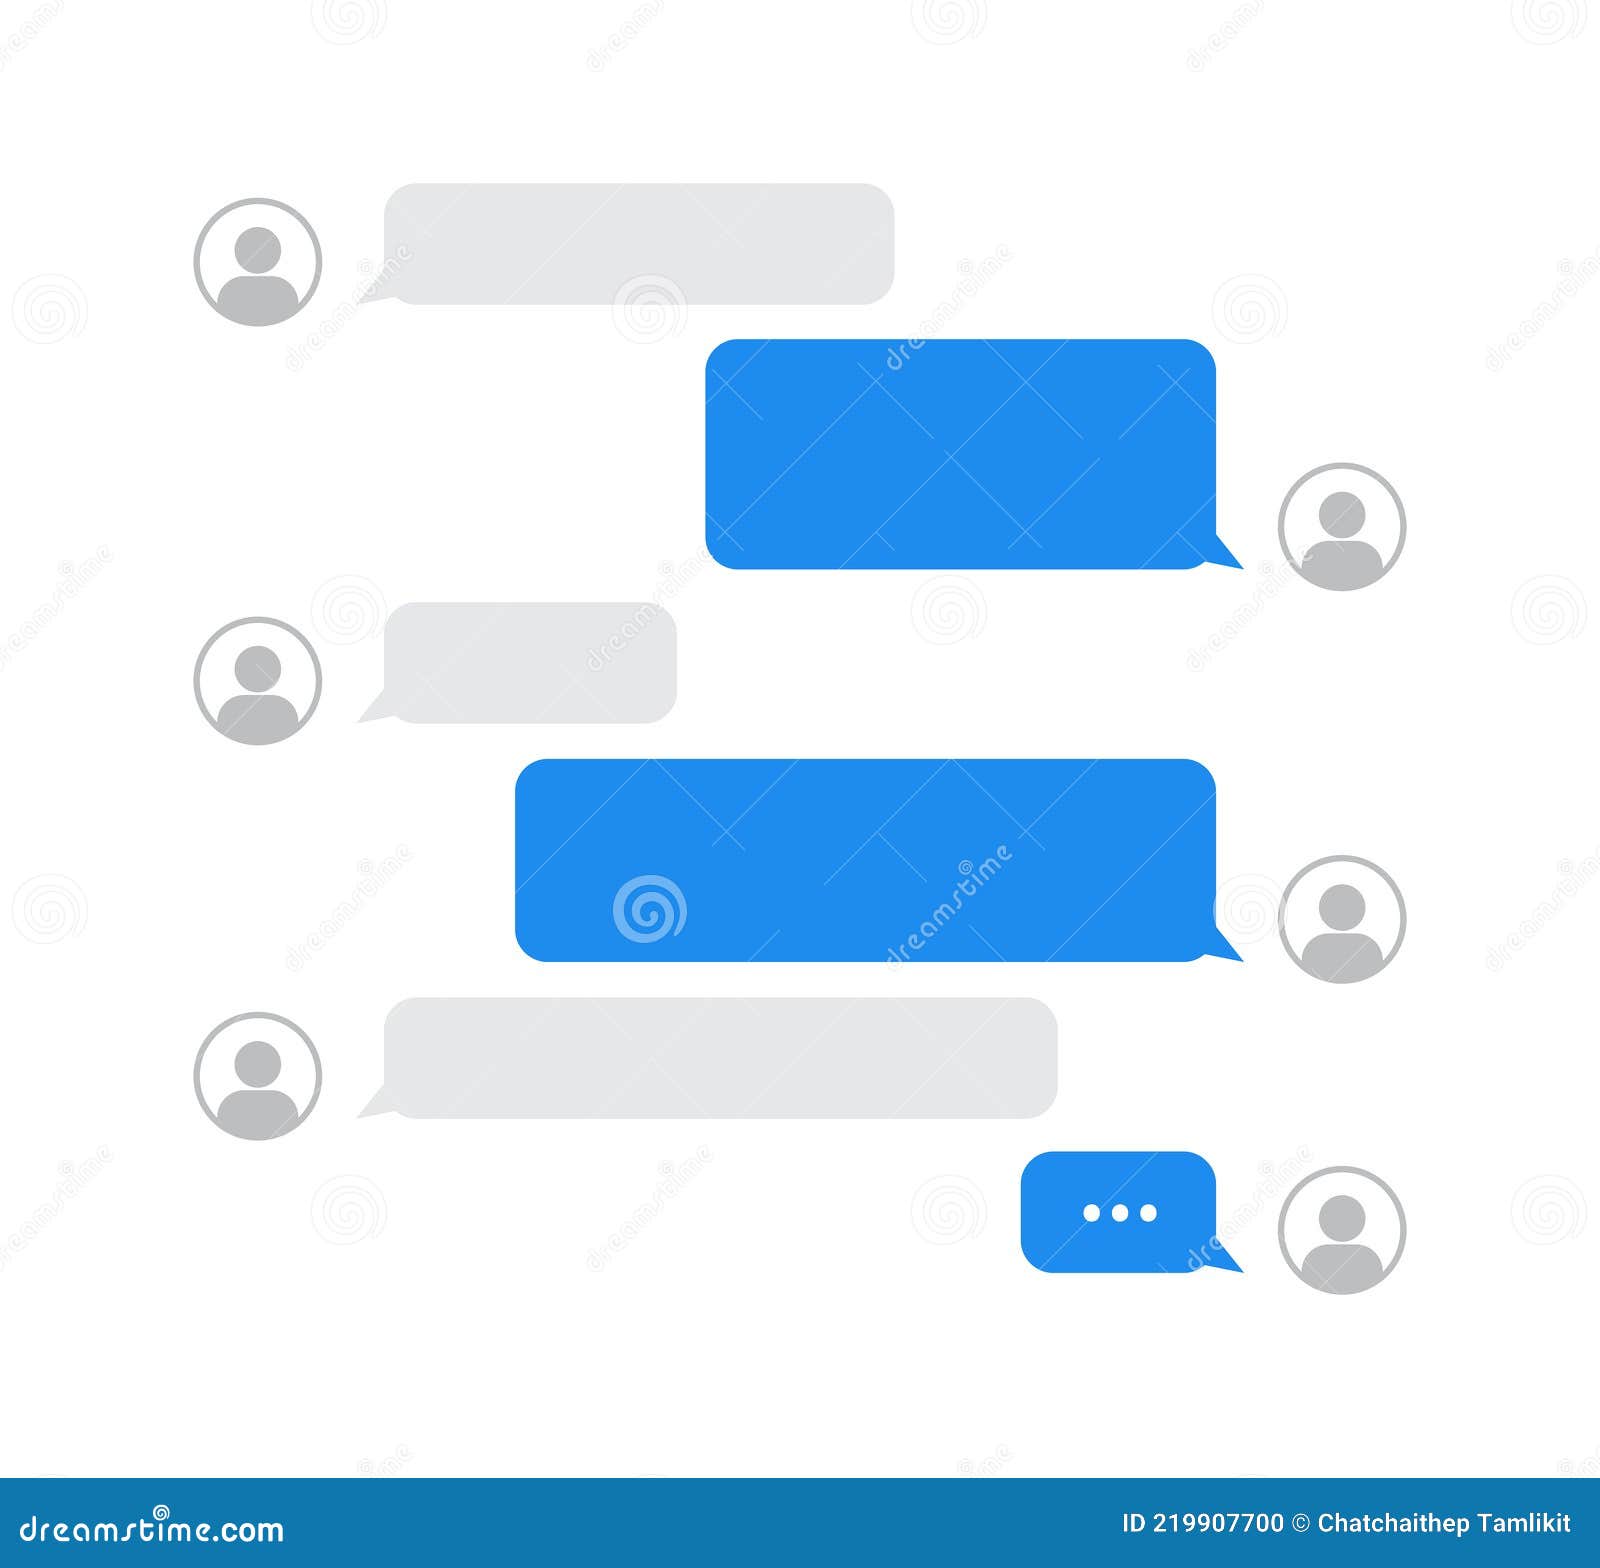 Những mẫu nền trắng với icon chat speech bubble sẽ là lựa chọn hoàn hảo cho các bài viết về liên lạc hoặc chia sẻ các thông tin qua nhiều phương tiện khác nhau. Hãy xem ảnh liên quan để lấy cảm hứng cho một công việc sáng tạo và hiệu quả.